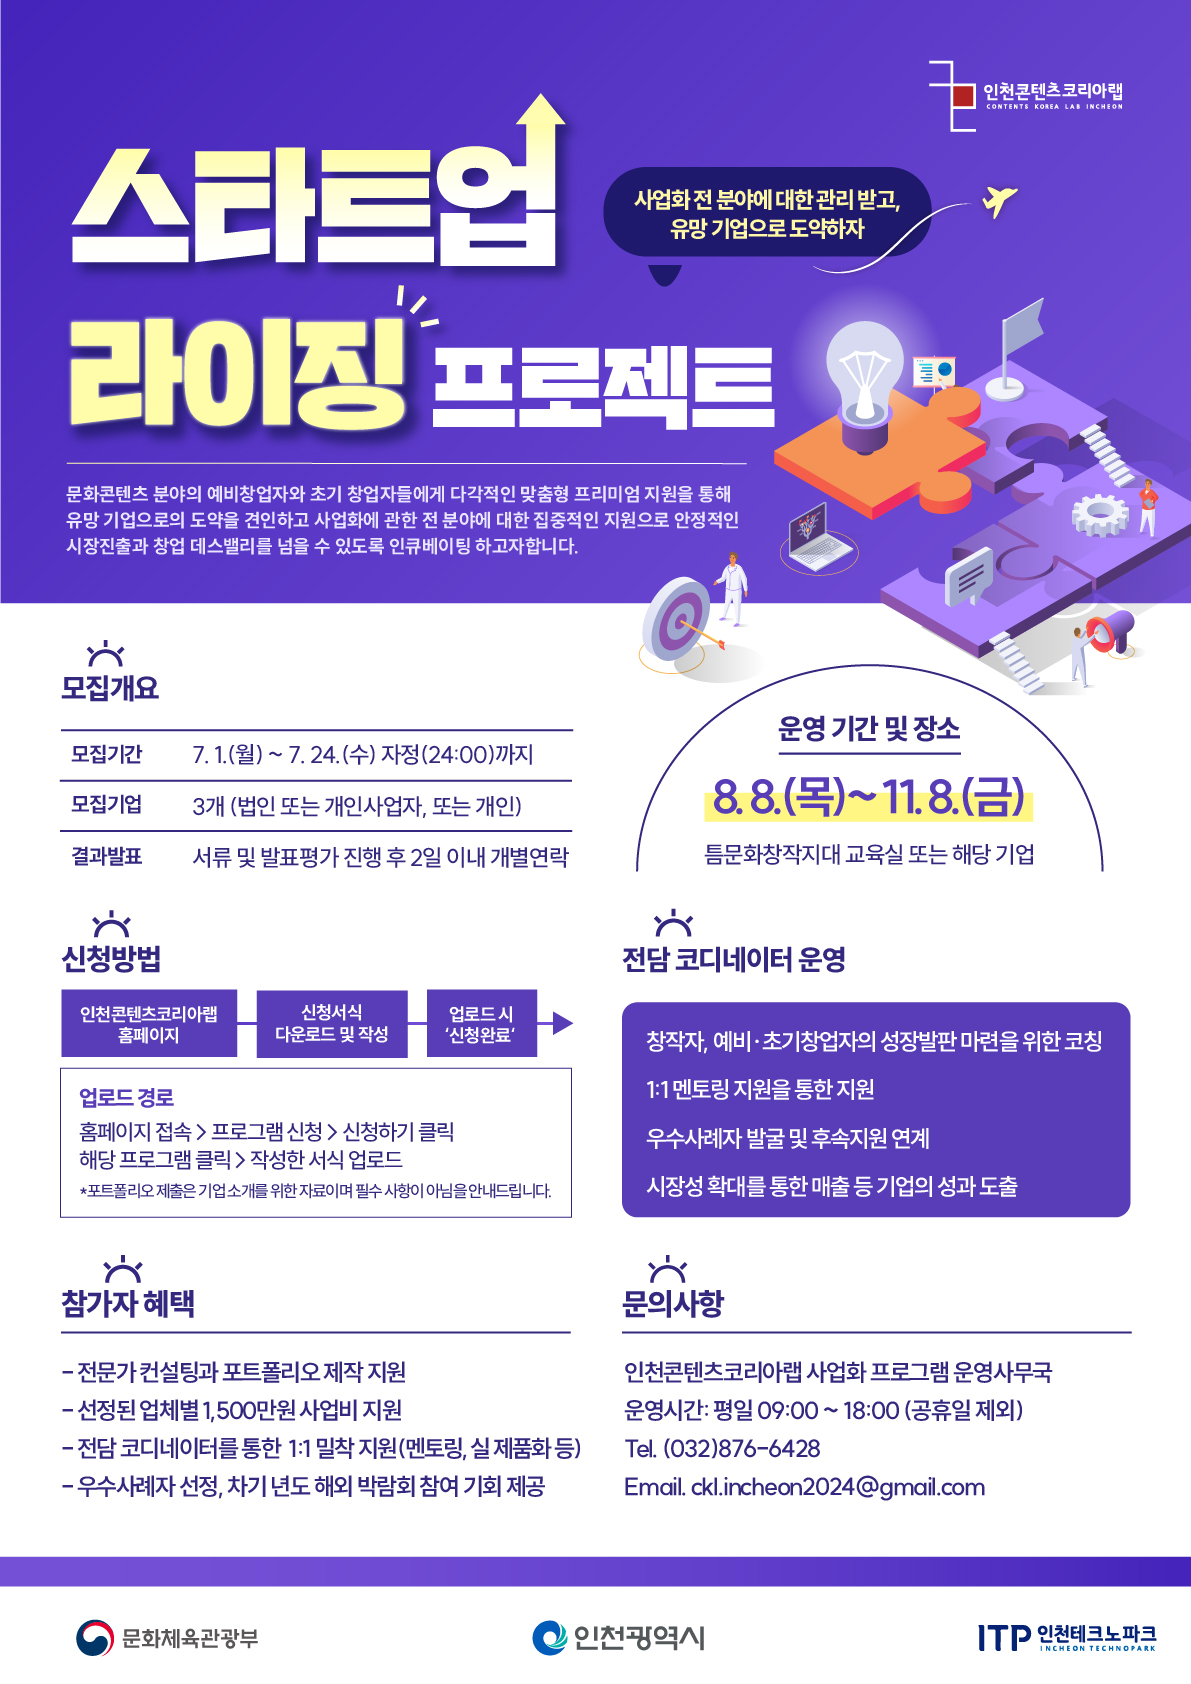 인천콘텐츠코리아랩 '2024 스타트업 라이징 프로젝트' 참여자 모집